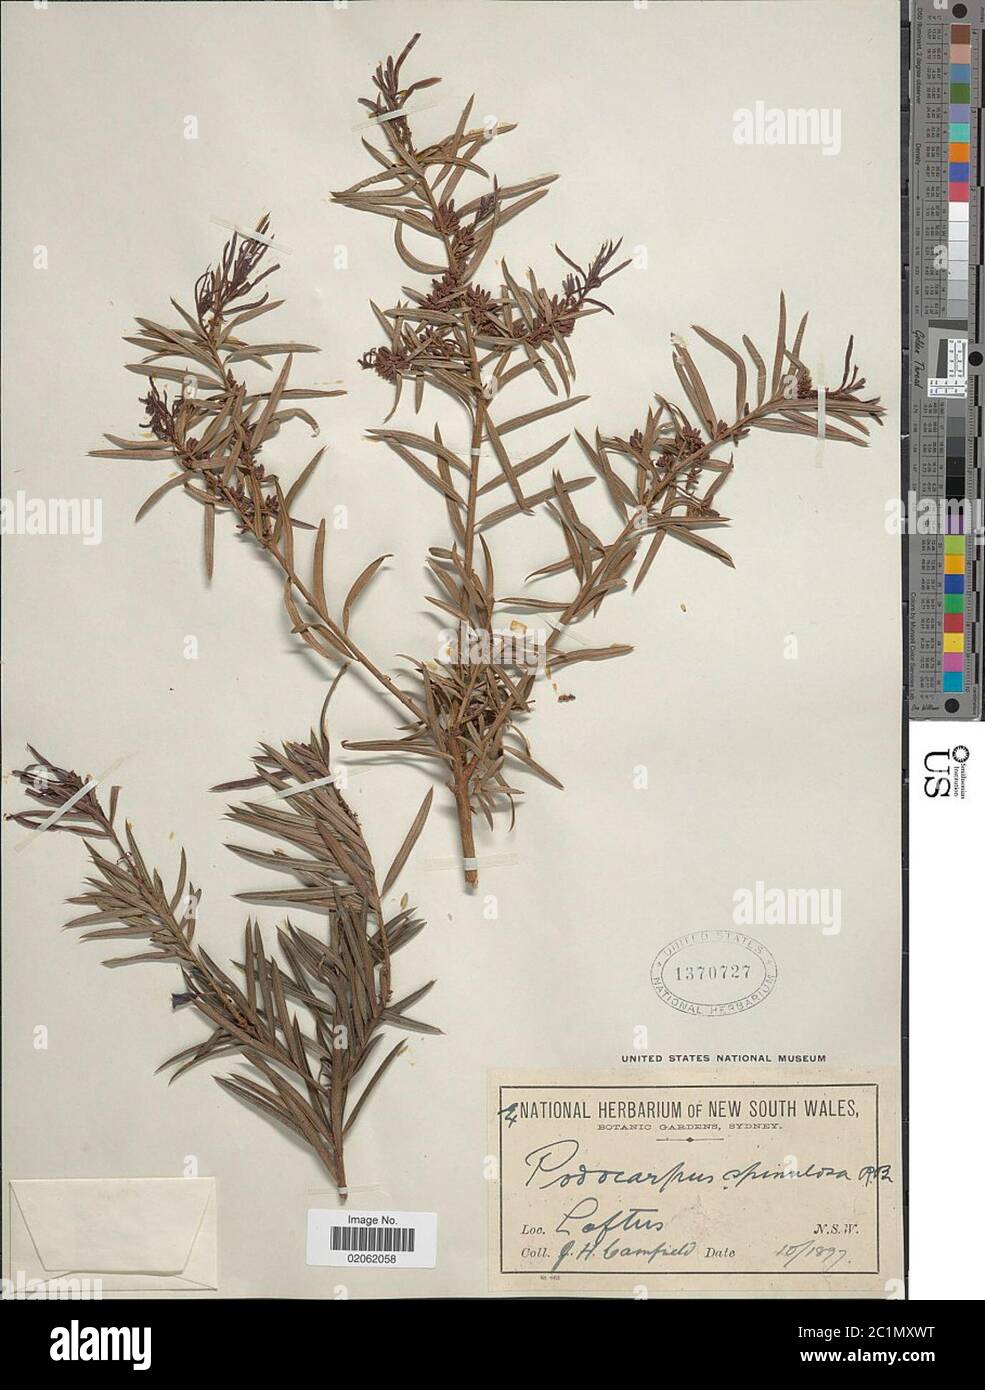 Podocarpus spinulosus Sm Aiton ex Mirbel Podocarpus spinulosus Sm Aiton ex Mirbel. Stock Photo